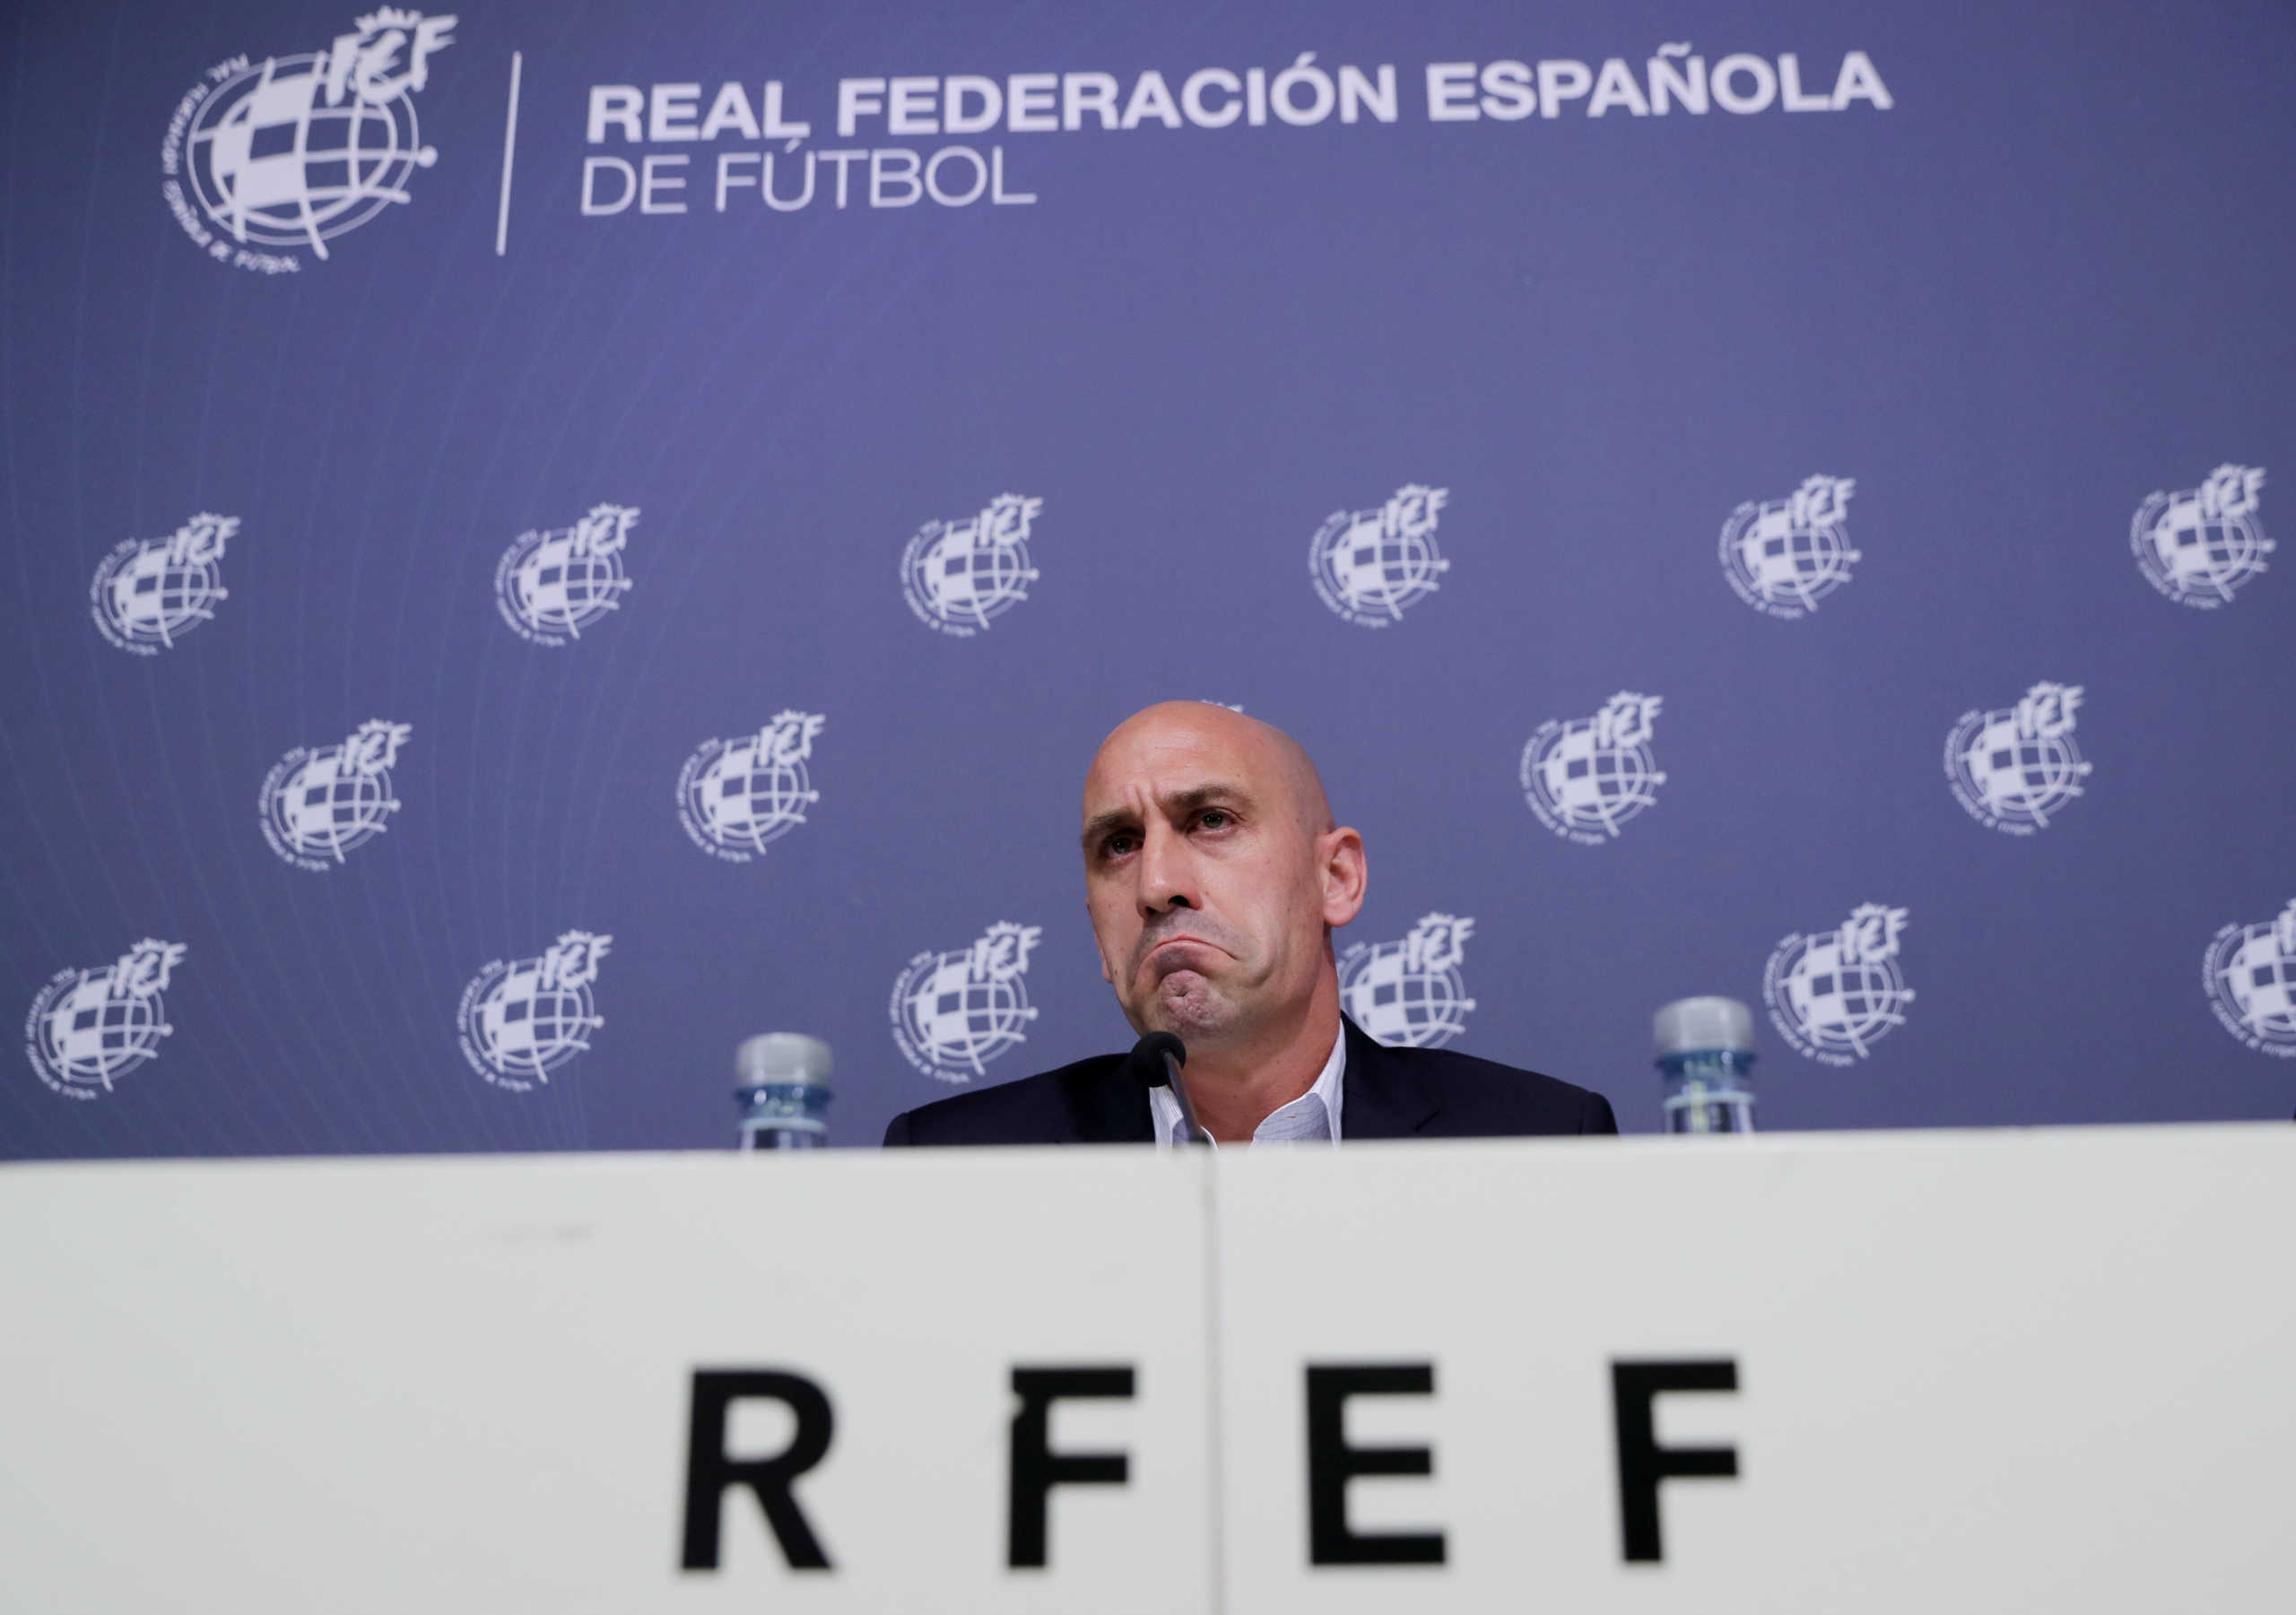 Σκάνδαλο στο ισπανικό ποδόσφαιρο – Ύποπτος για πλαστογραφία ο πρόεδρος της Ομοσπονδίας